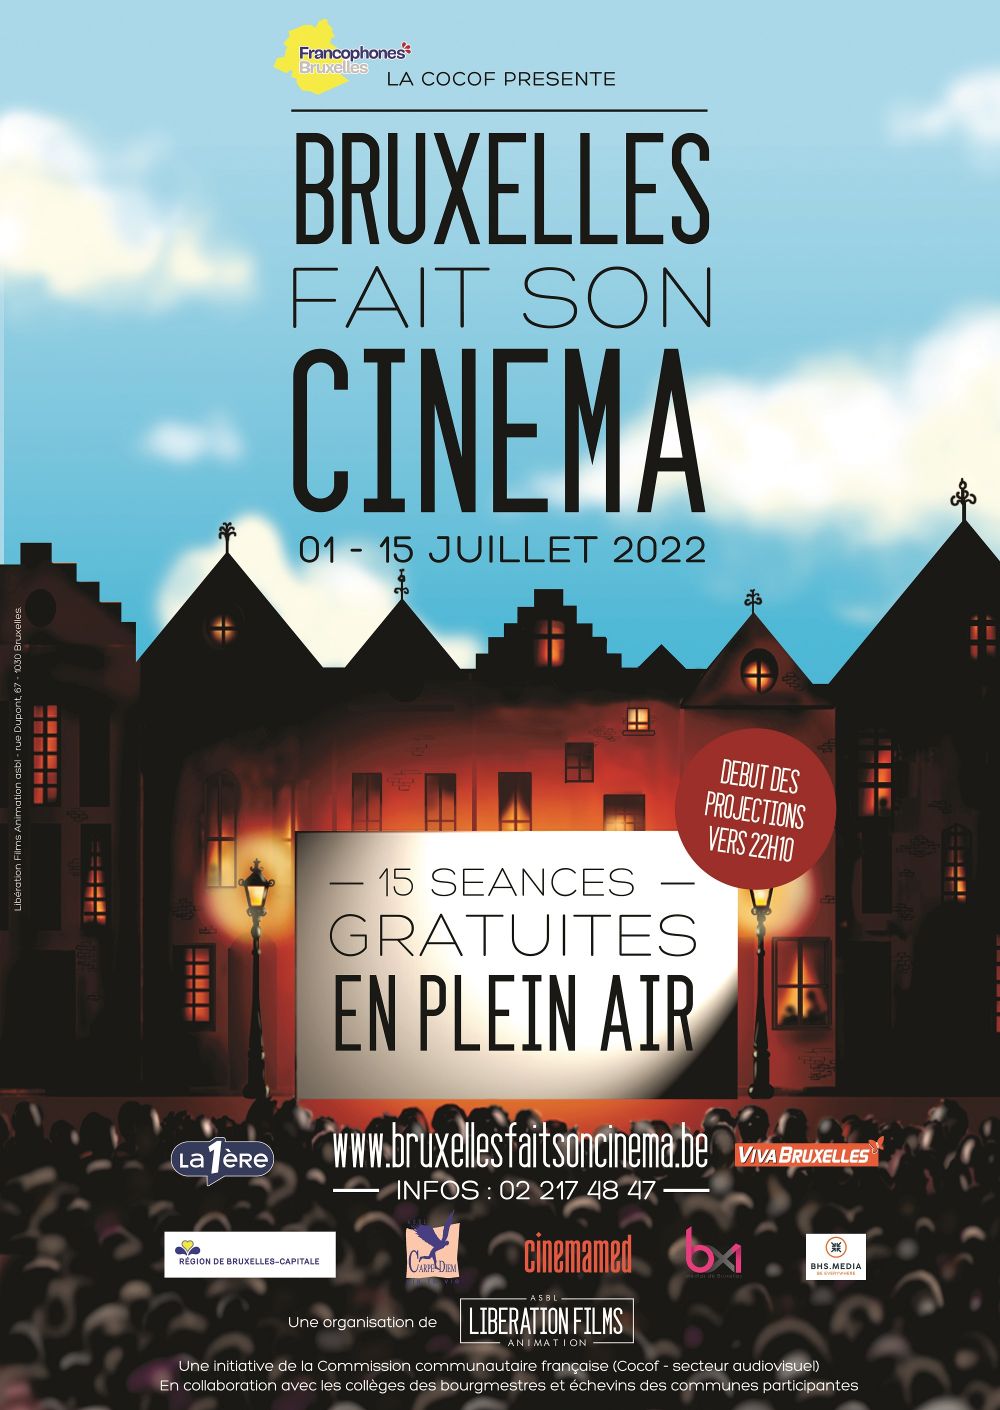 Cet été, Bruxelles fera son cinéma !